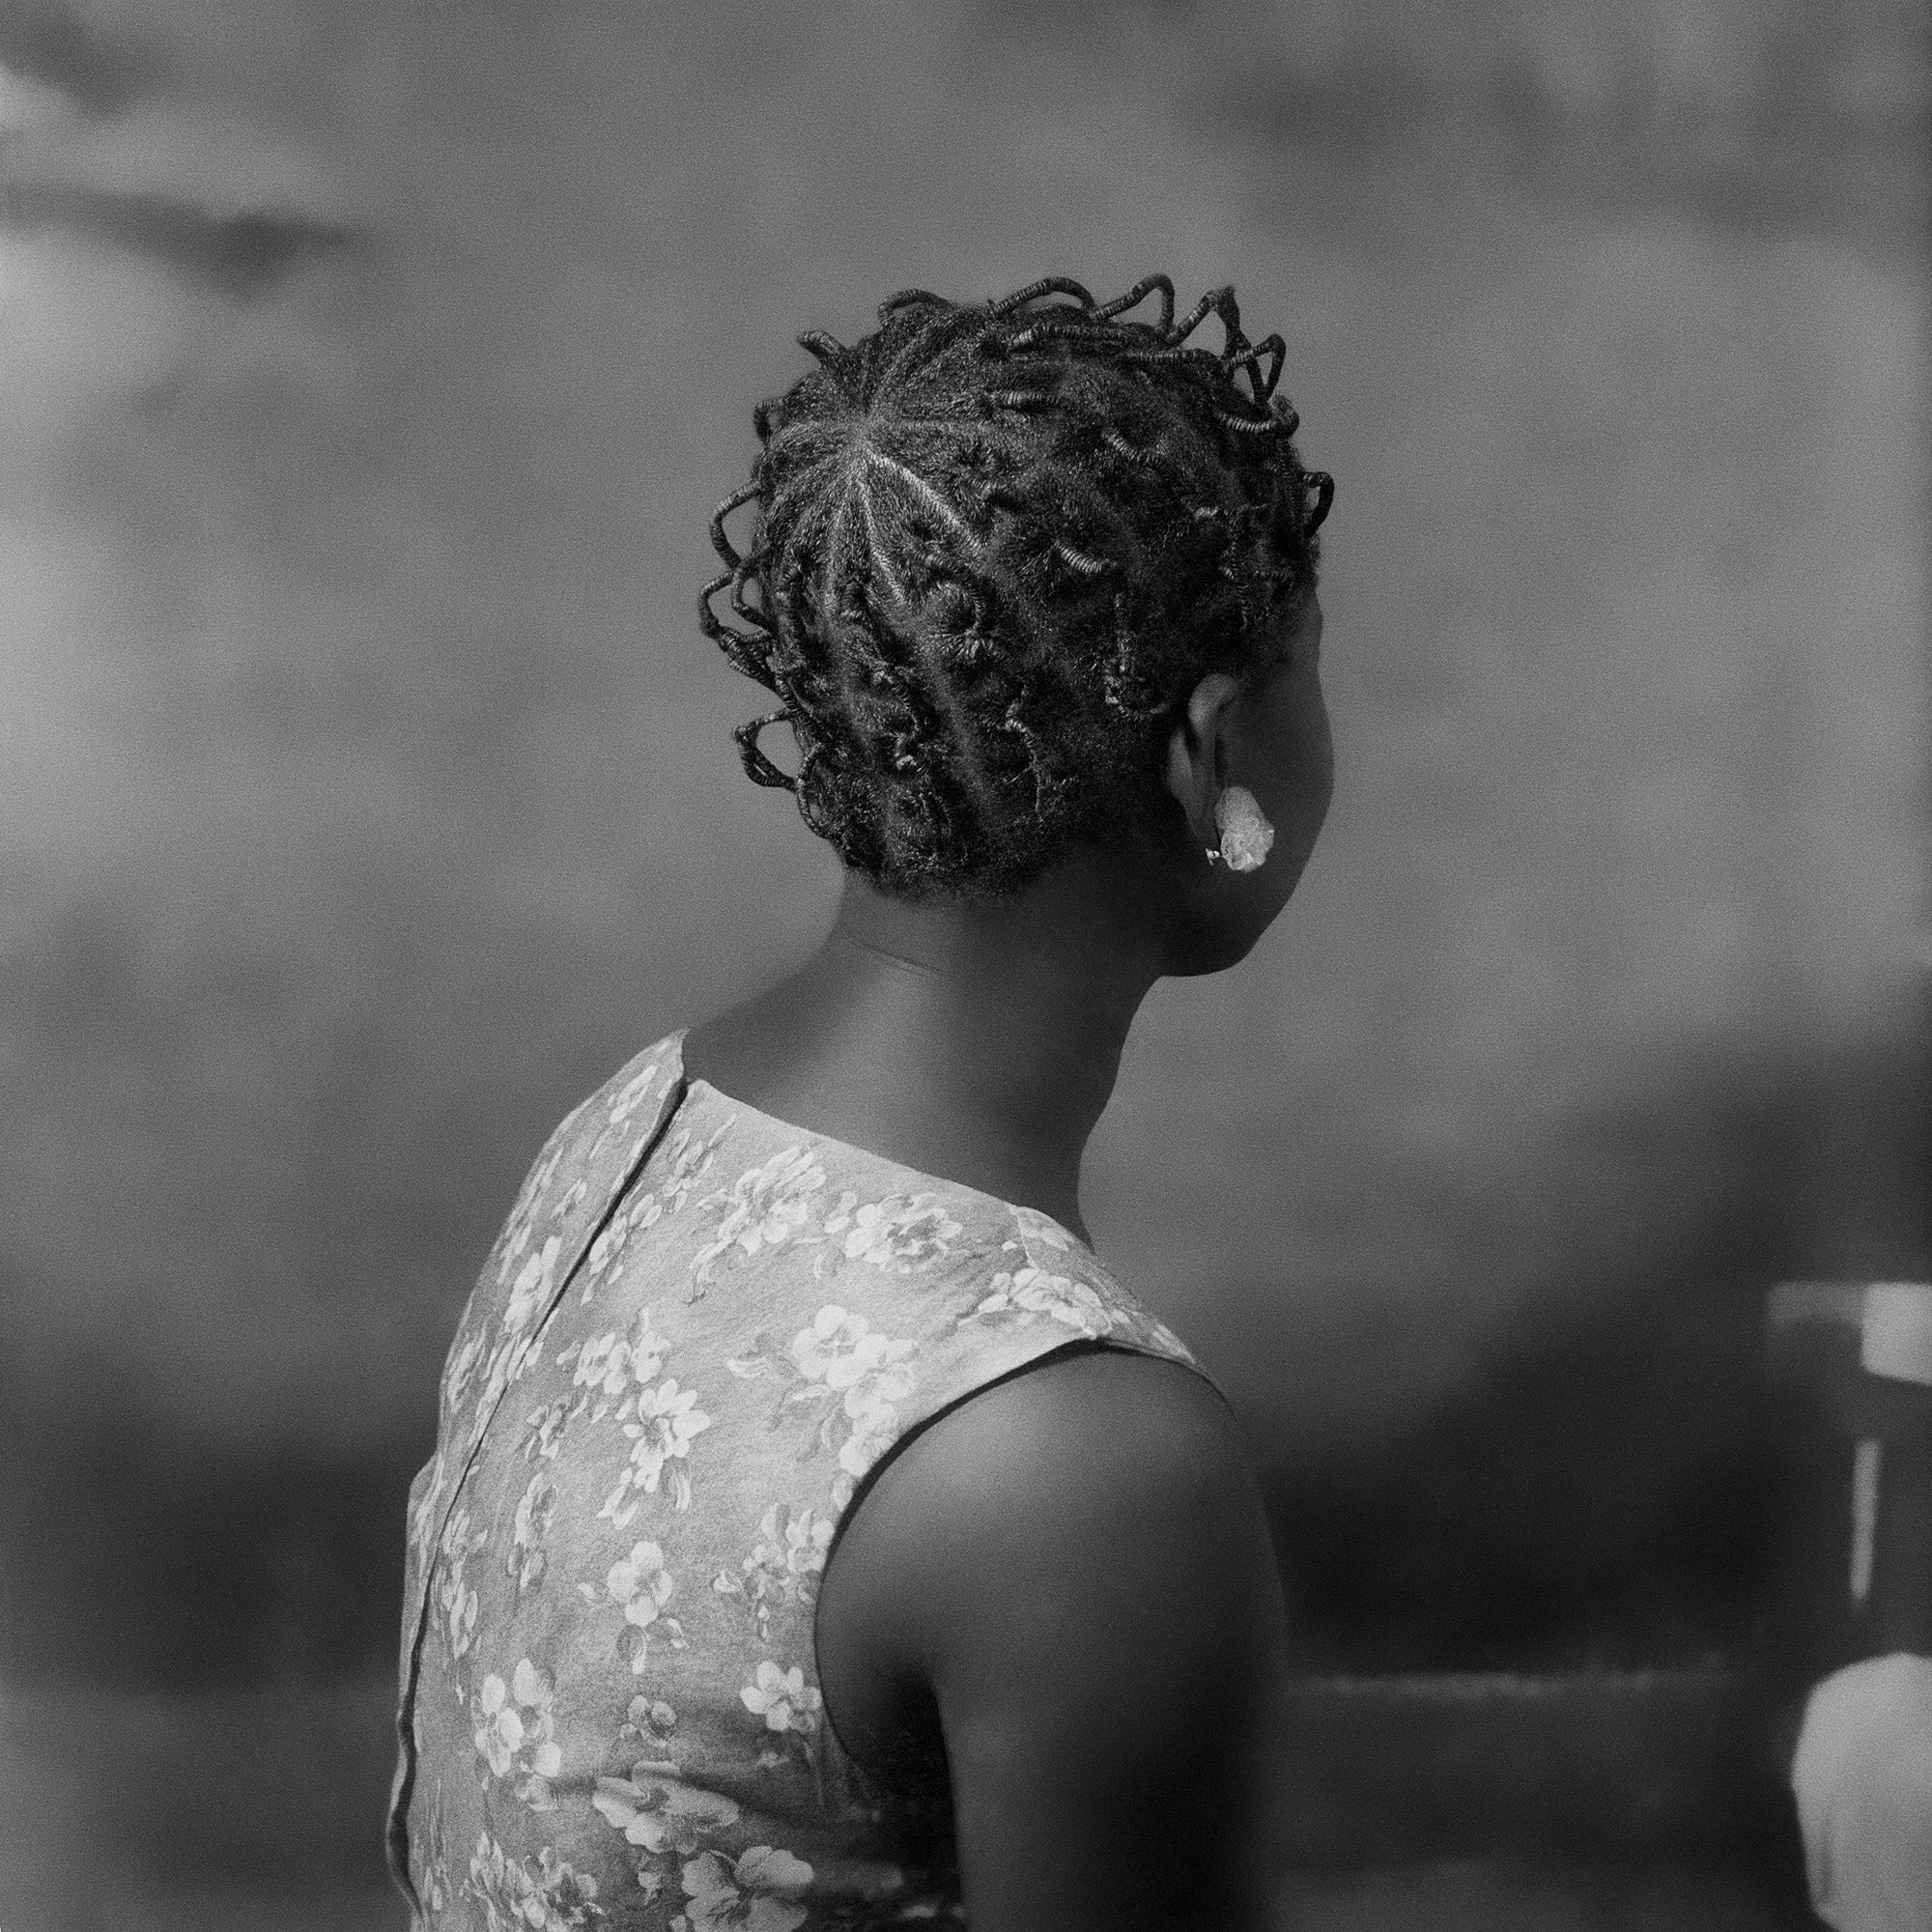 Ever Young studio, Accra, c. 1954. All images © James Barnor, courtesy of Galerie Clémentine de la Féronnière